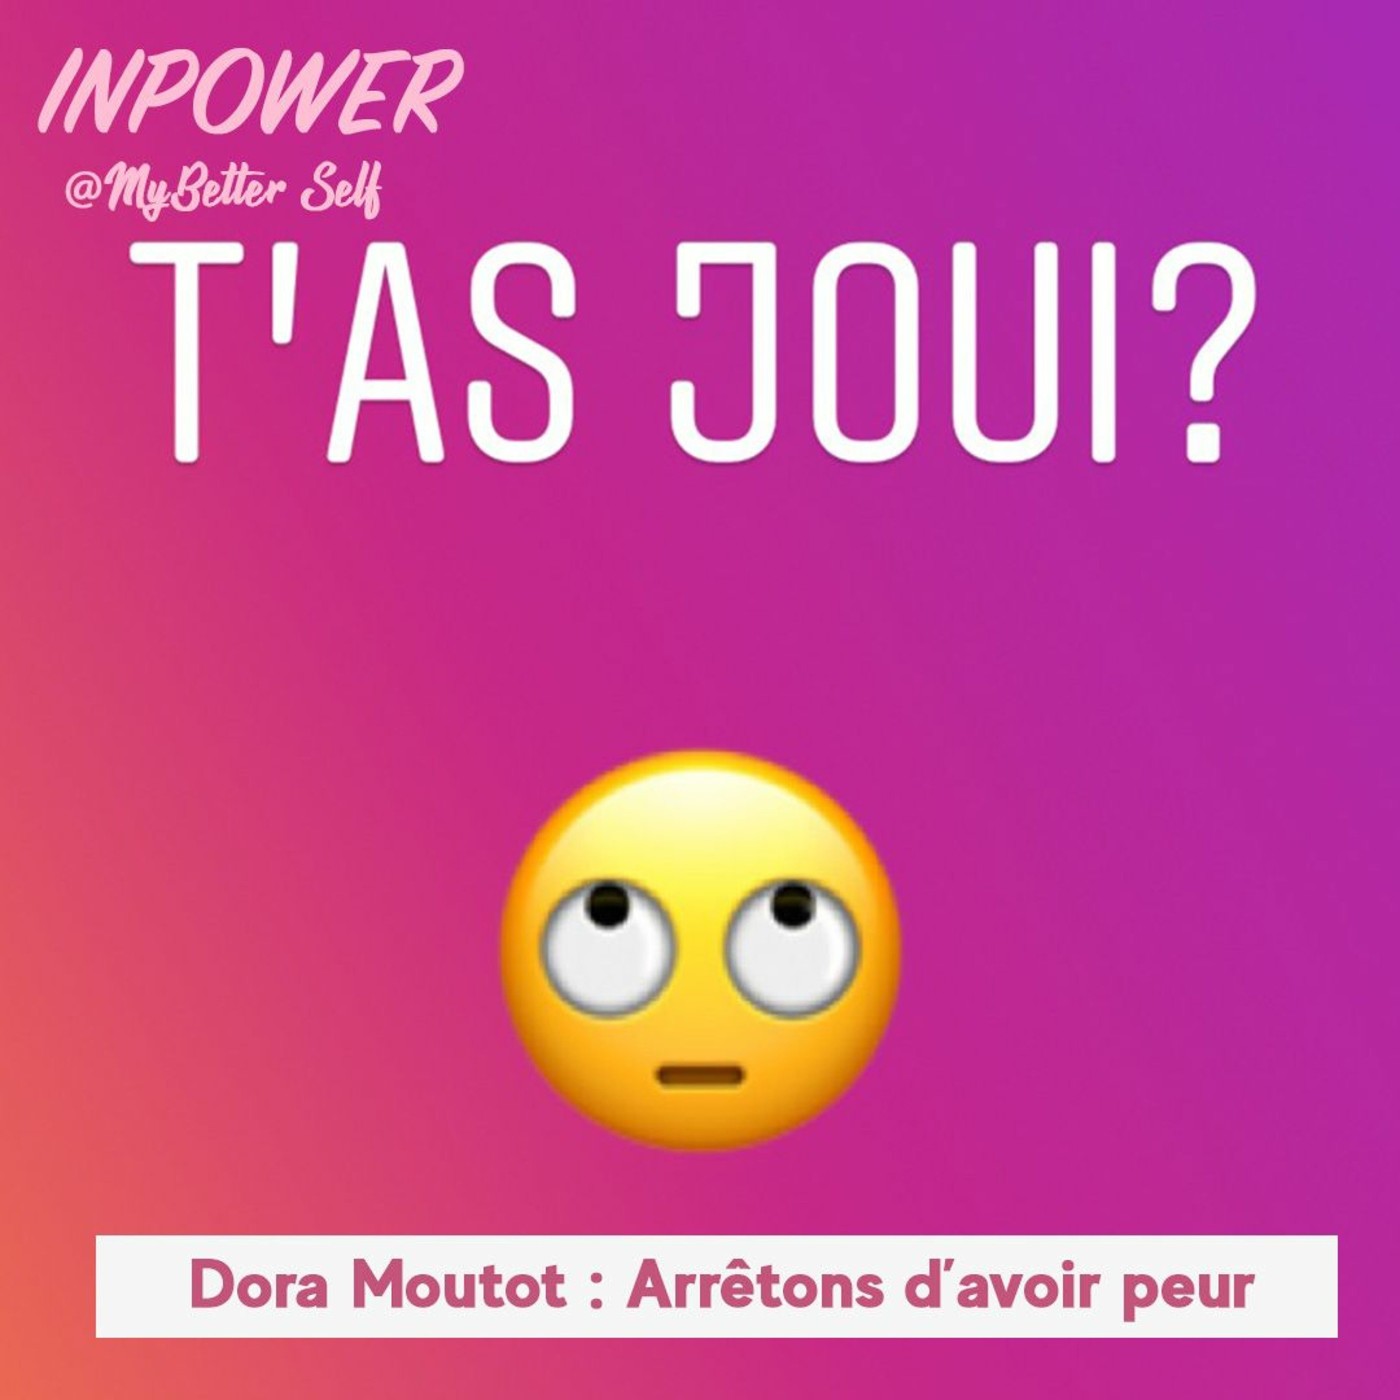 Dora Moutot, fondatrice de Tasjoui - Arrêtons d'avoir peur